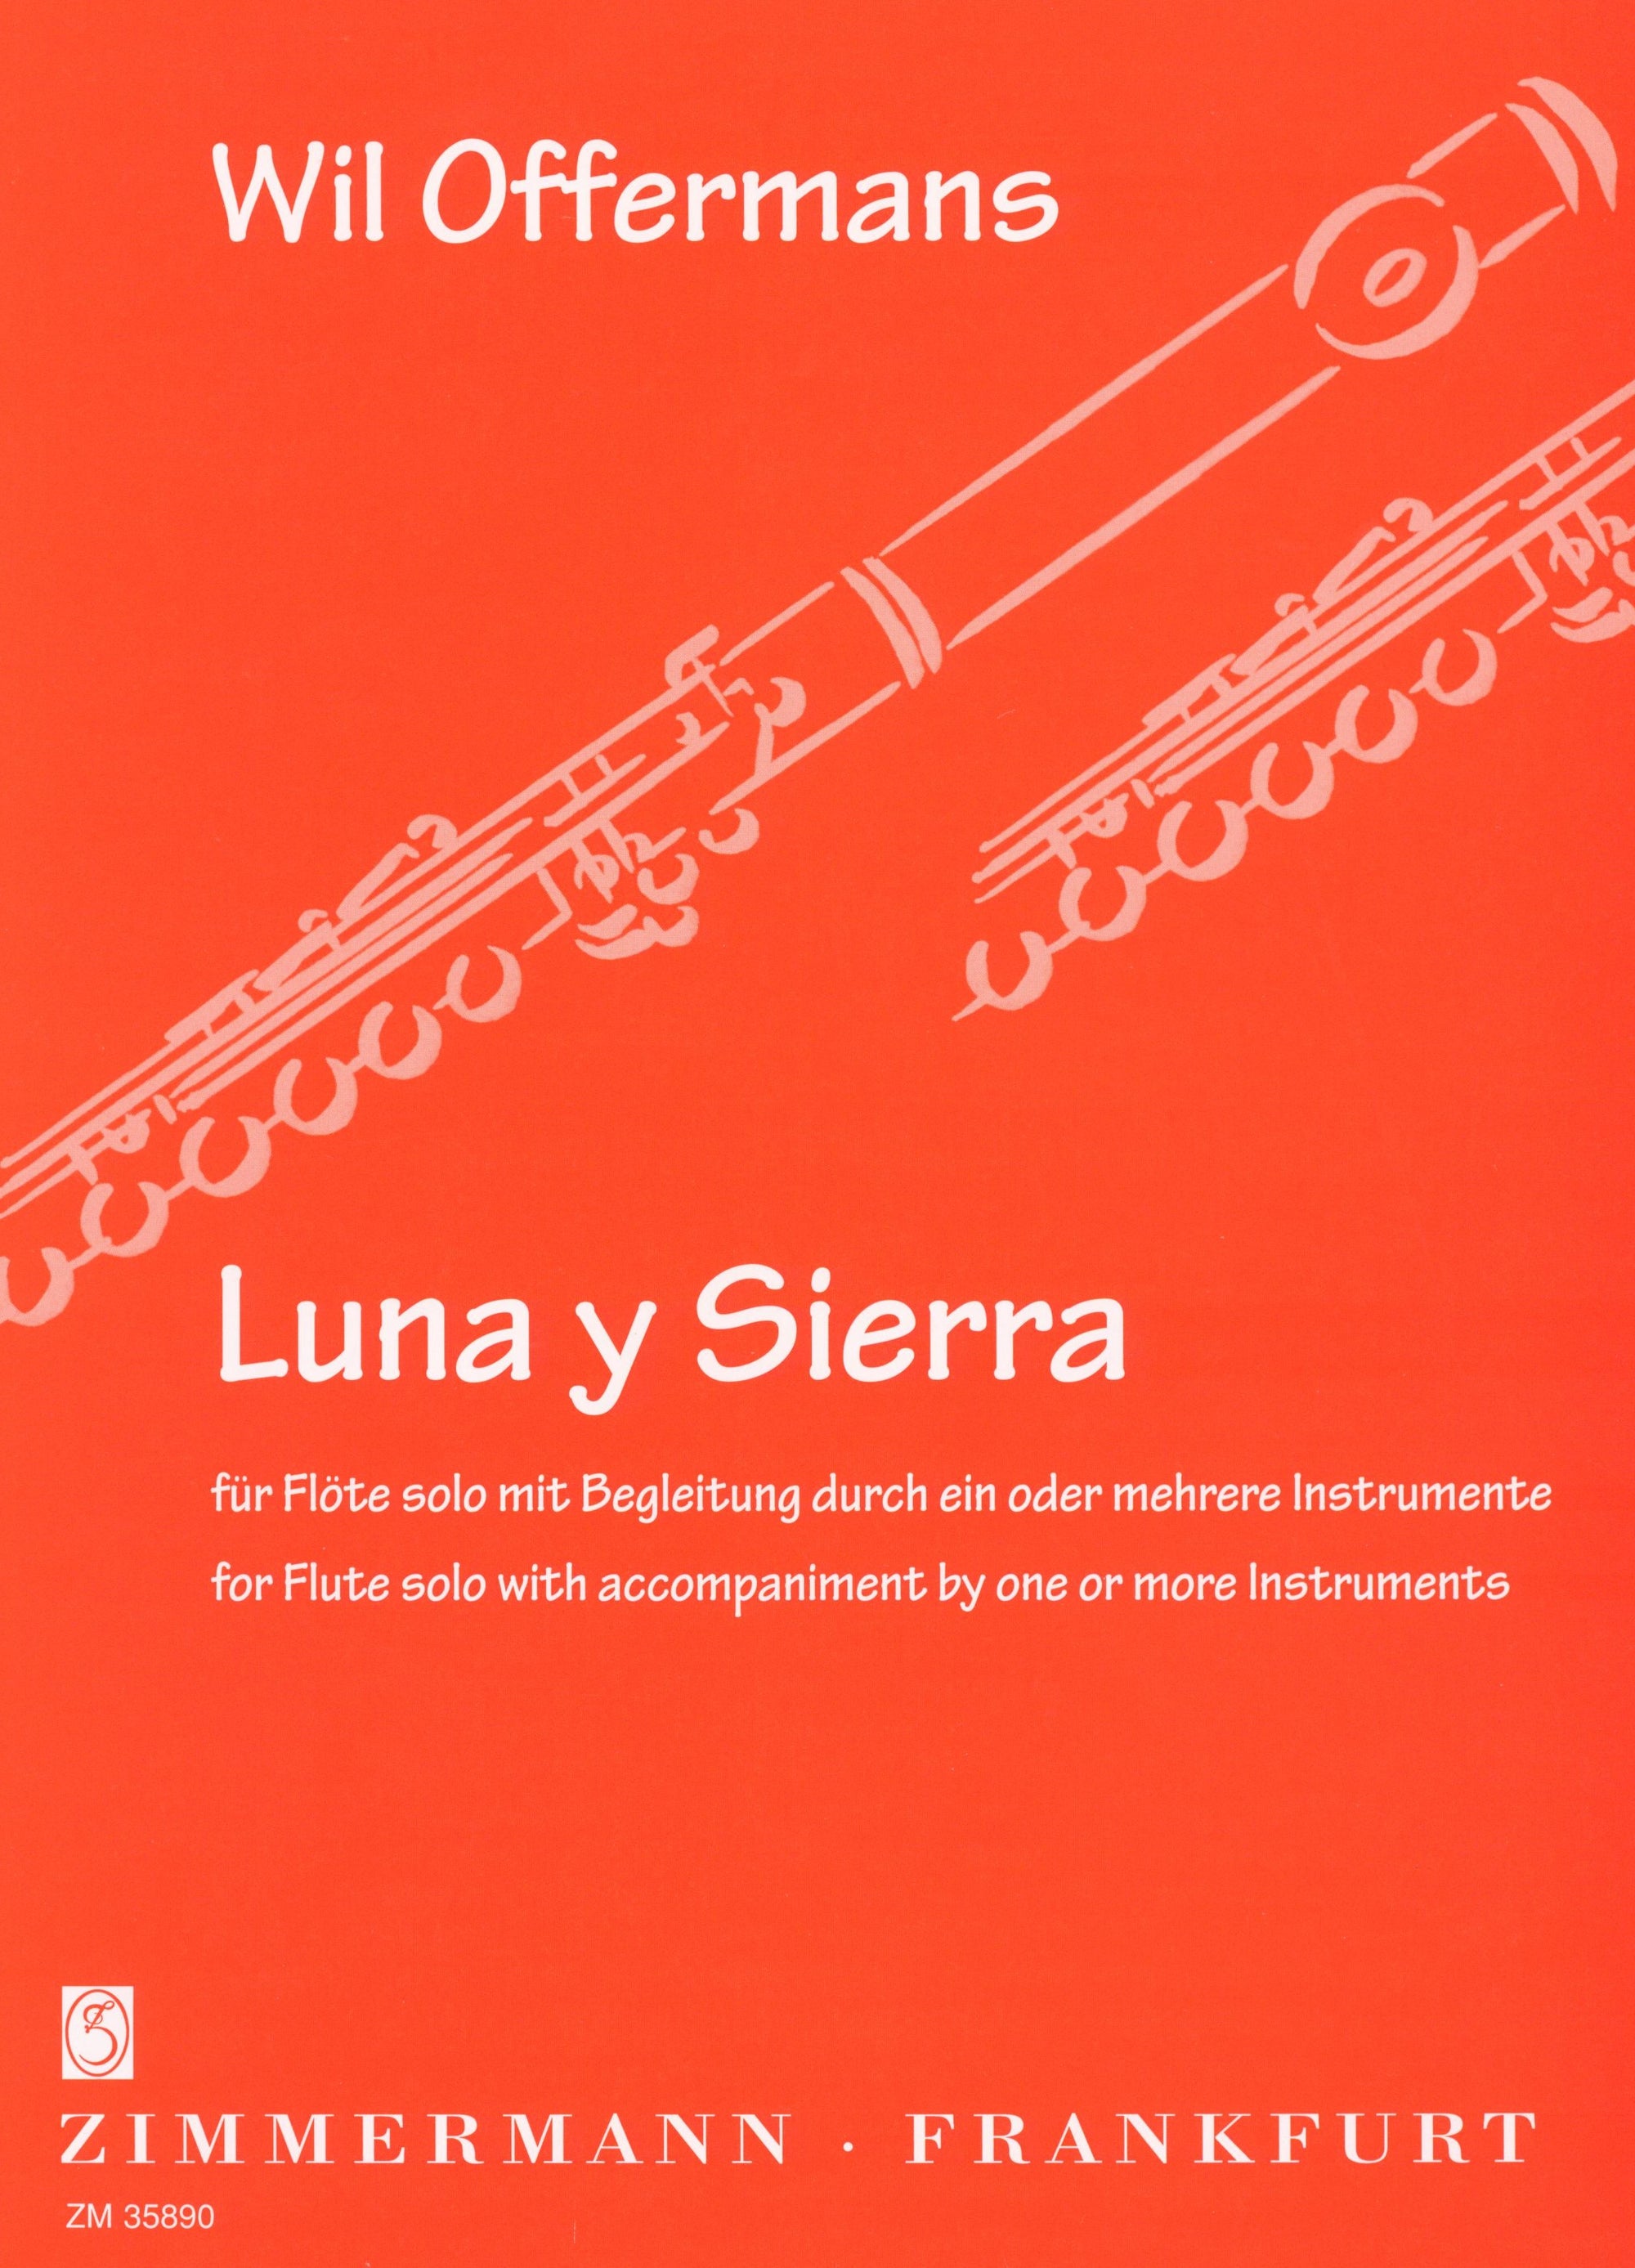 Offermans: Luna y Sierra